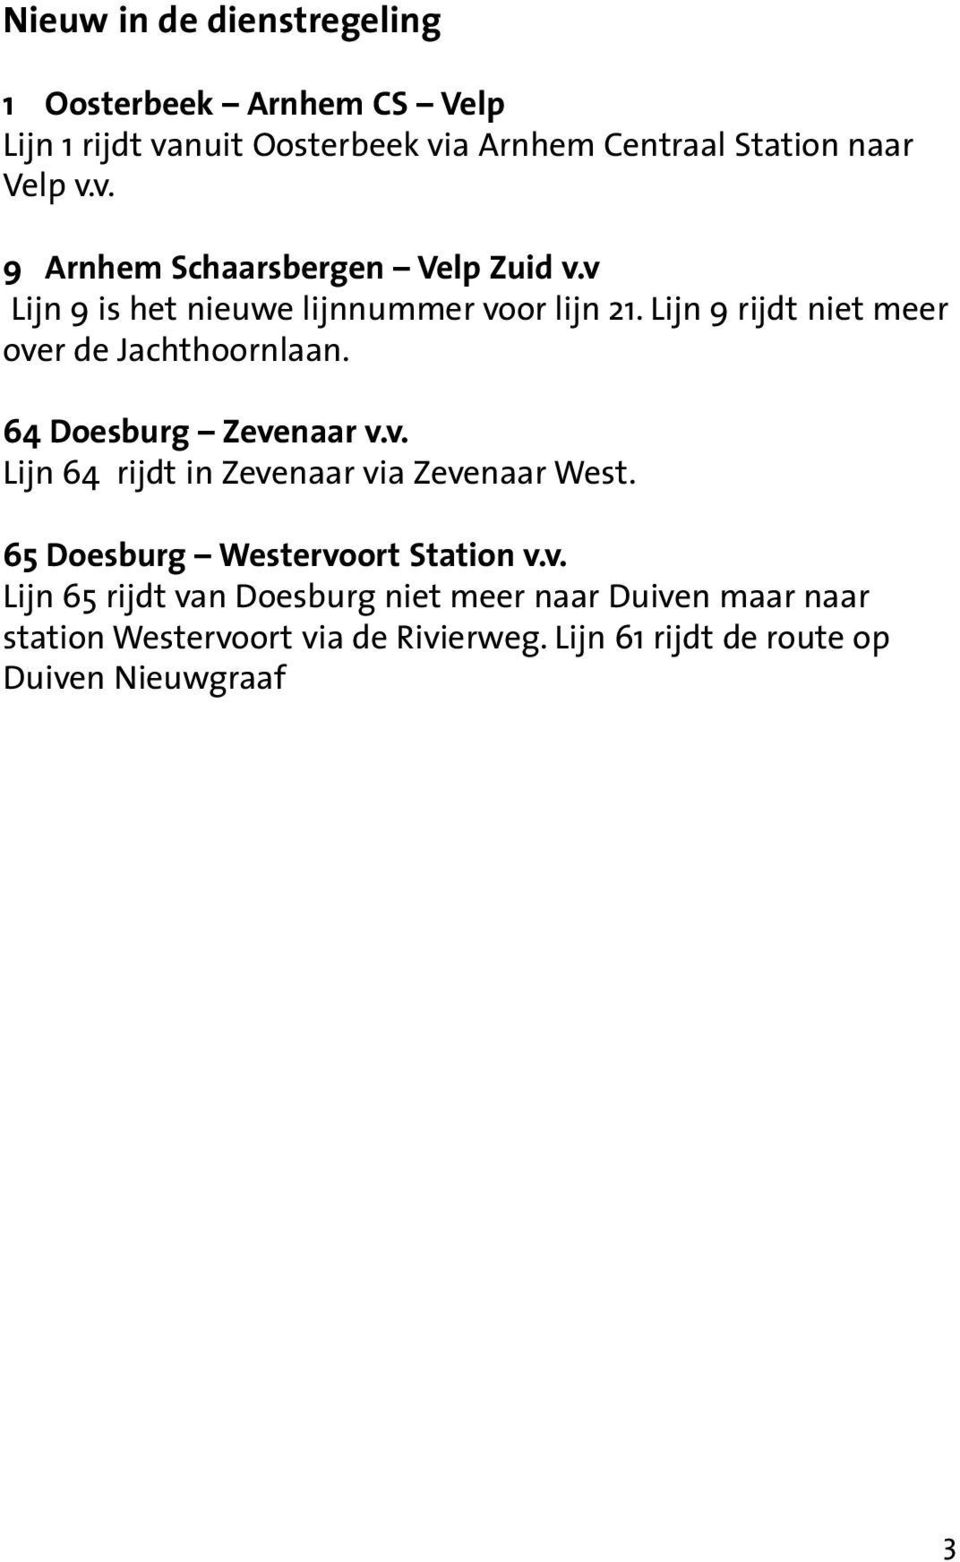 65 Doesburg Westervoort Station v.v. Lijn 65 rijdt van Doesburg niet meer naar Duiven maar naar station Westervoort via de Rivierweg.